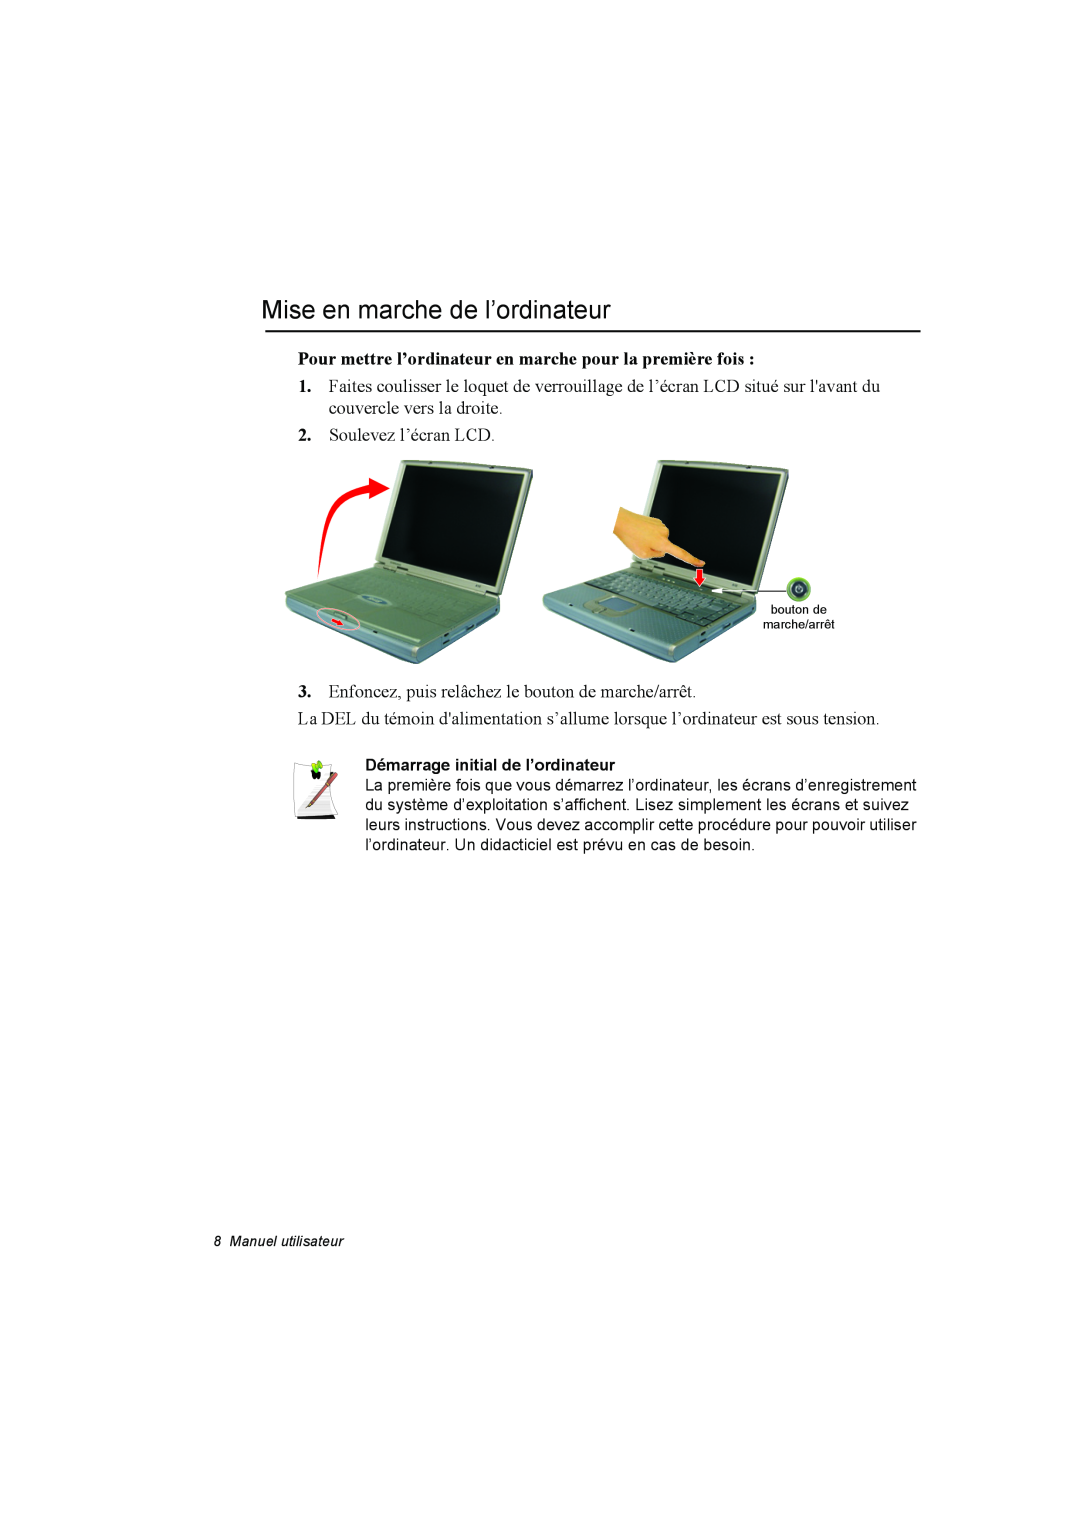 Samsung NA10DH00HT/SEF manual Mise en marche de l’ordinateur, Pour mettre l’ordinateur en marche pour la première fois 